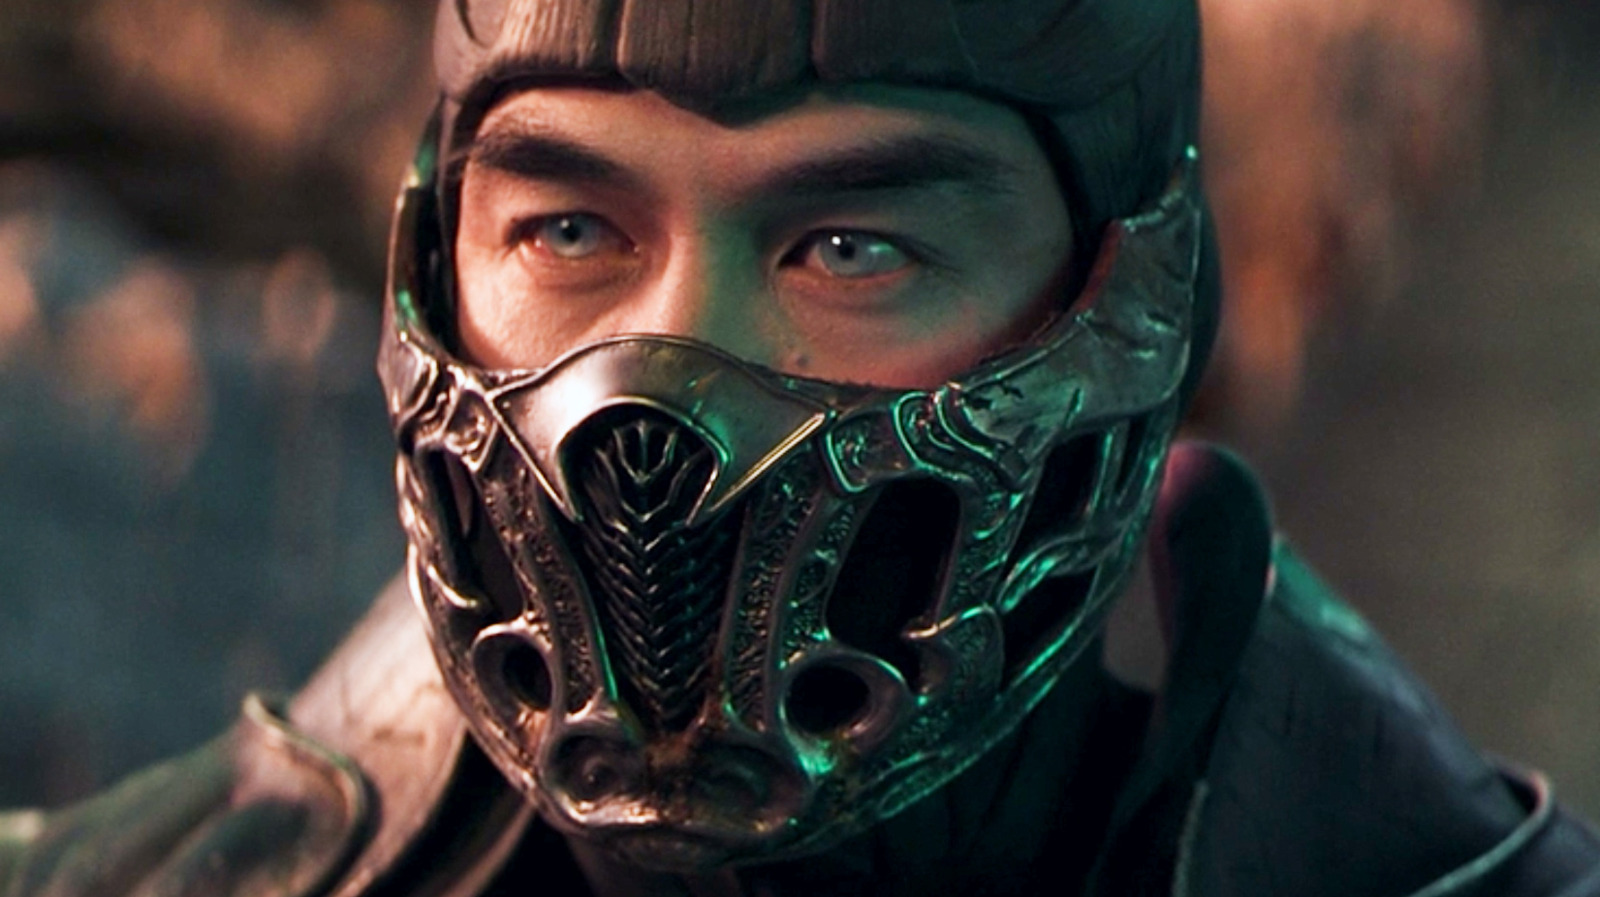 Chilling Mortal Kombat Reboot Fan Poster Imagines Chin Han as Shang Tsung